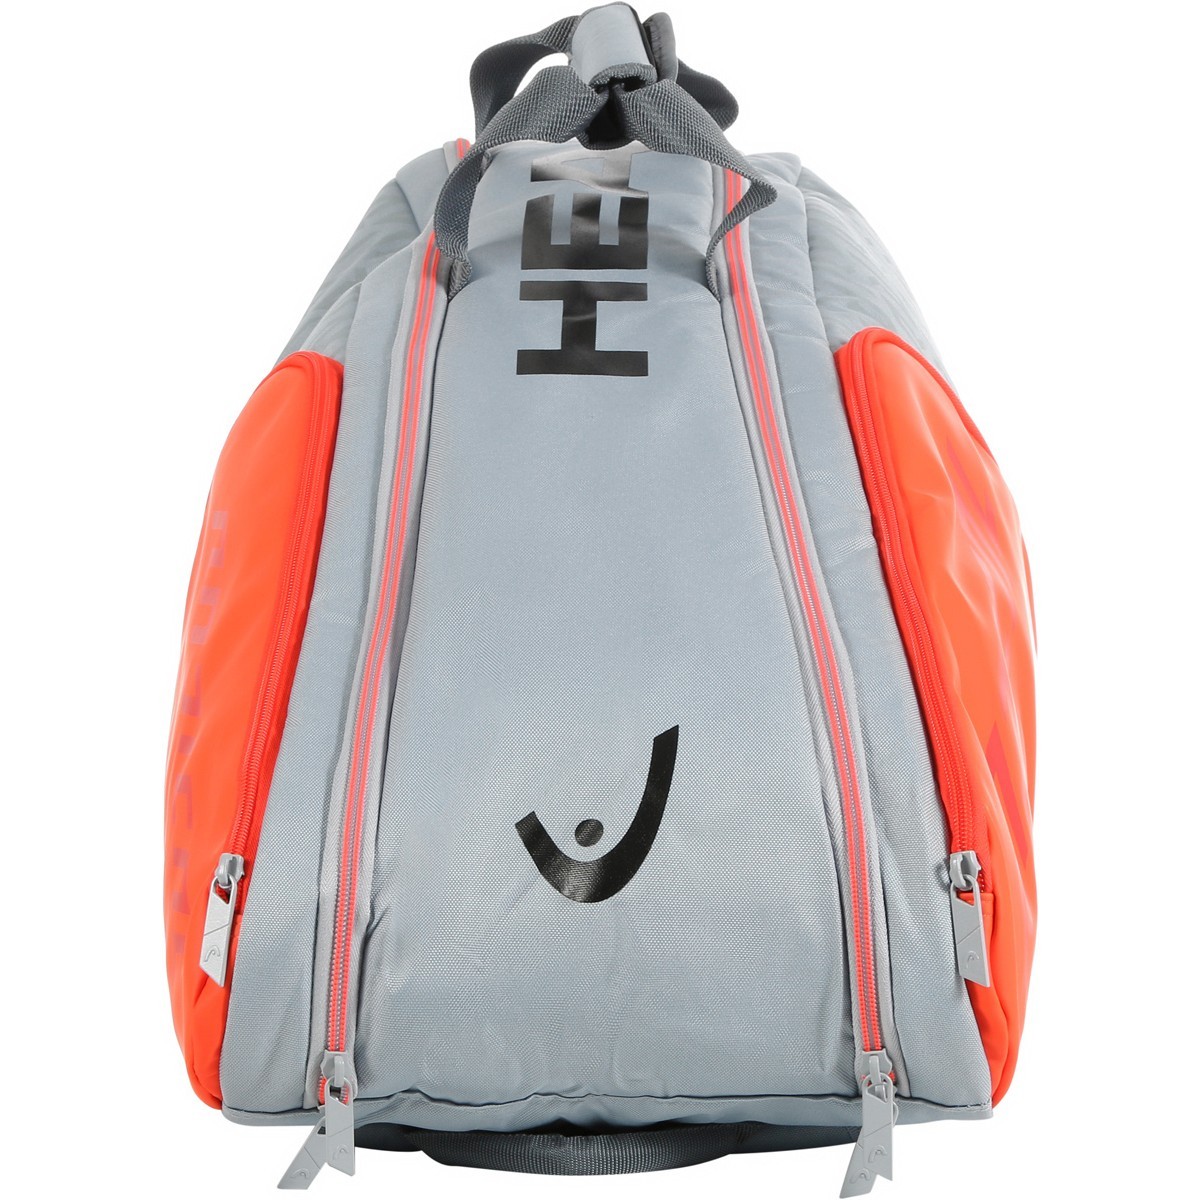 Теннисная сумка Head Radical 9R Supercombi grey/orange